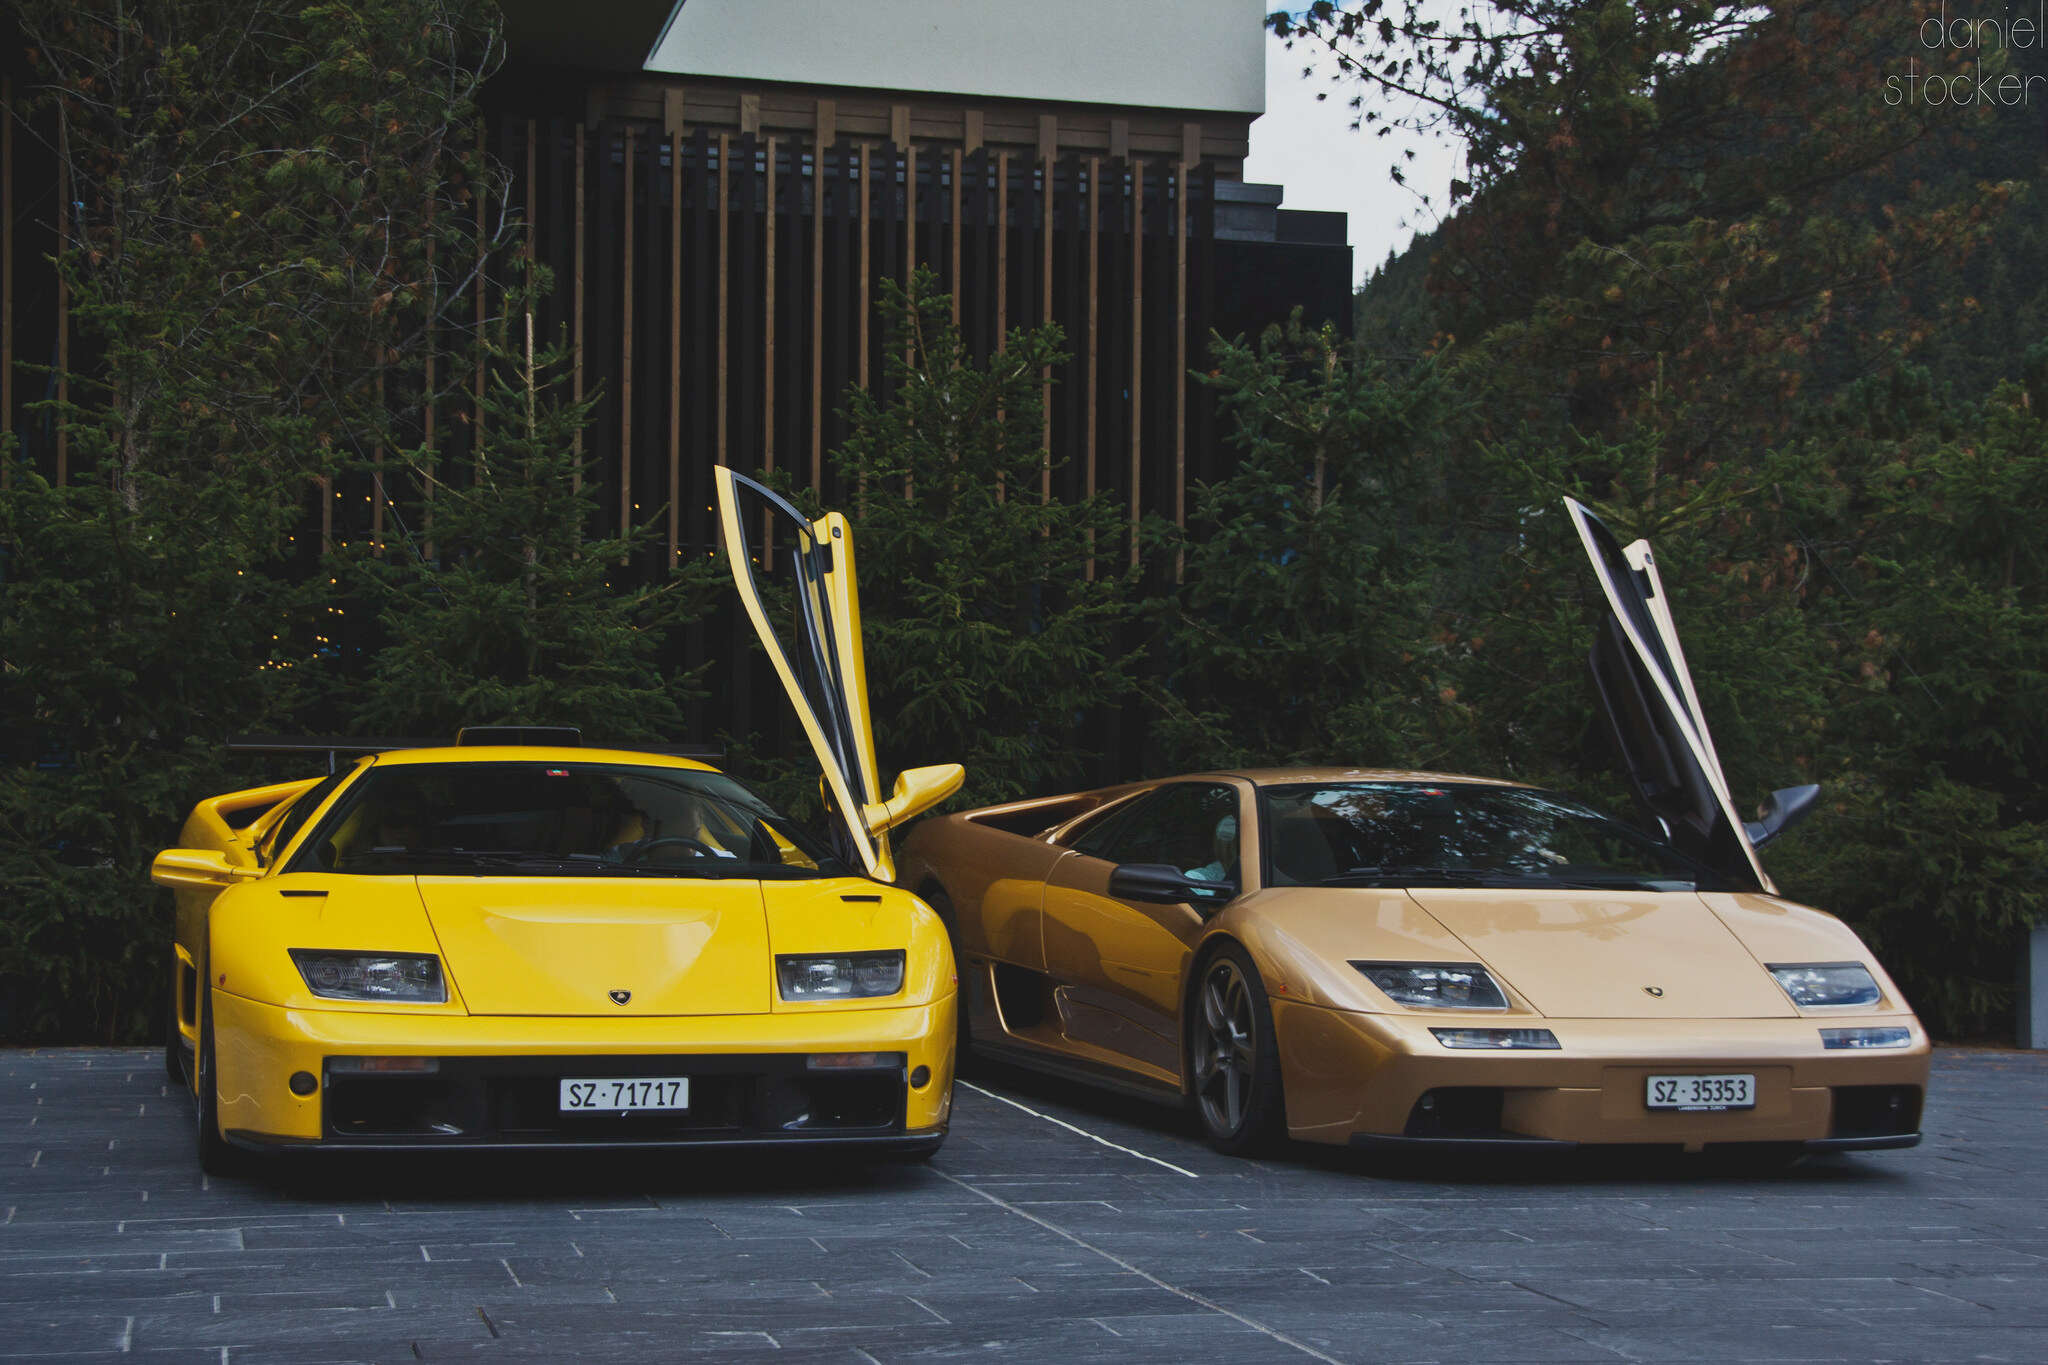 Two yellow Lamborghini Diablos